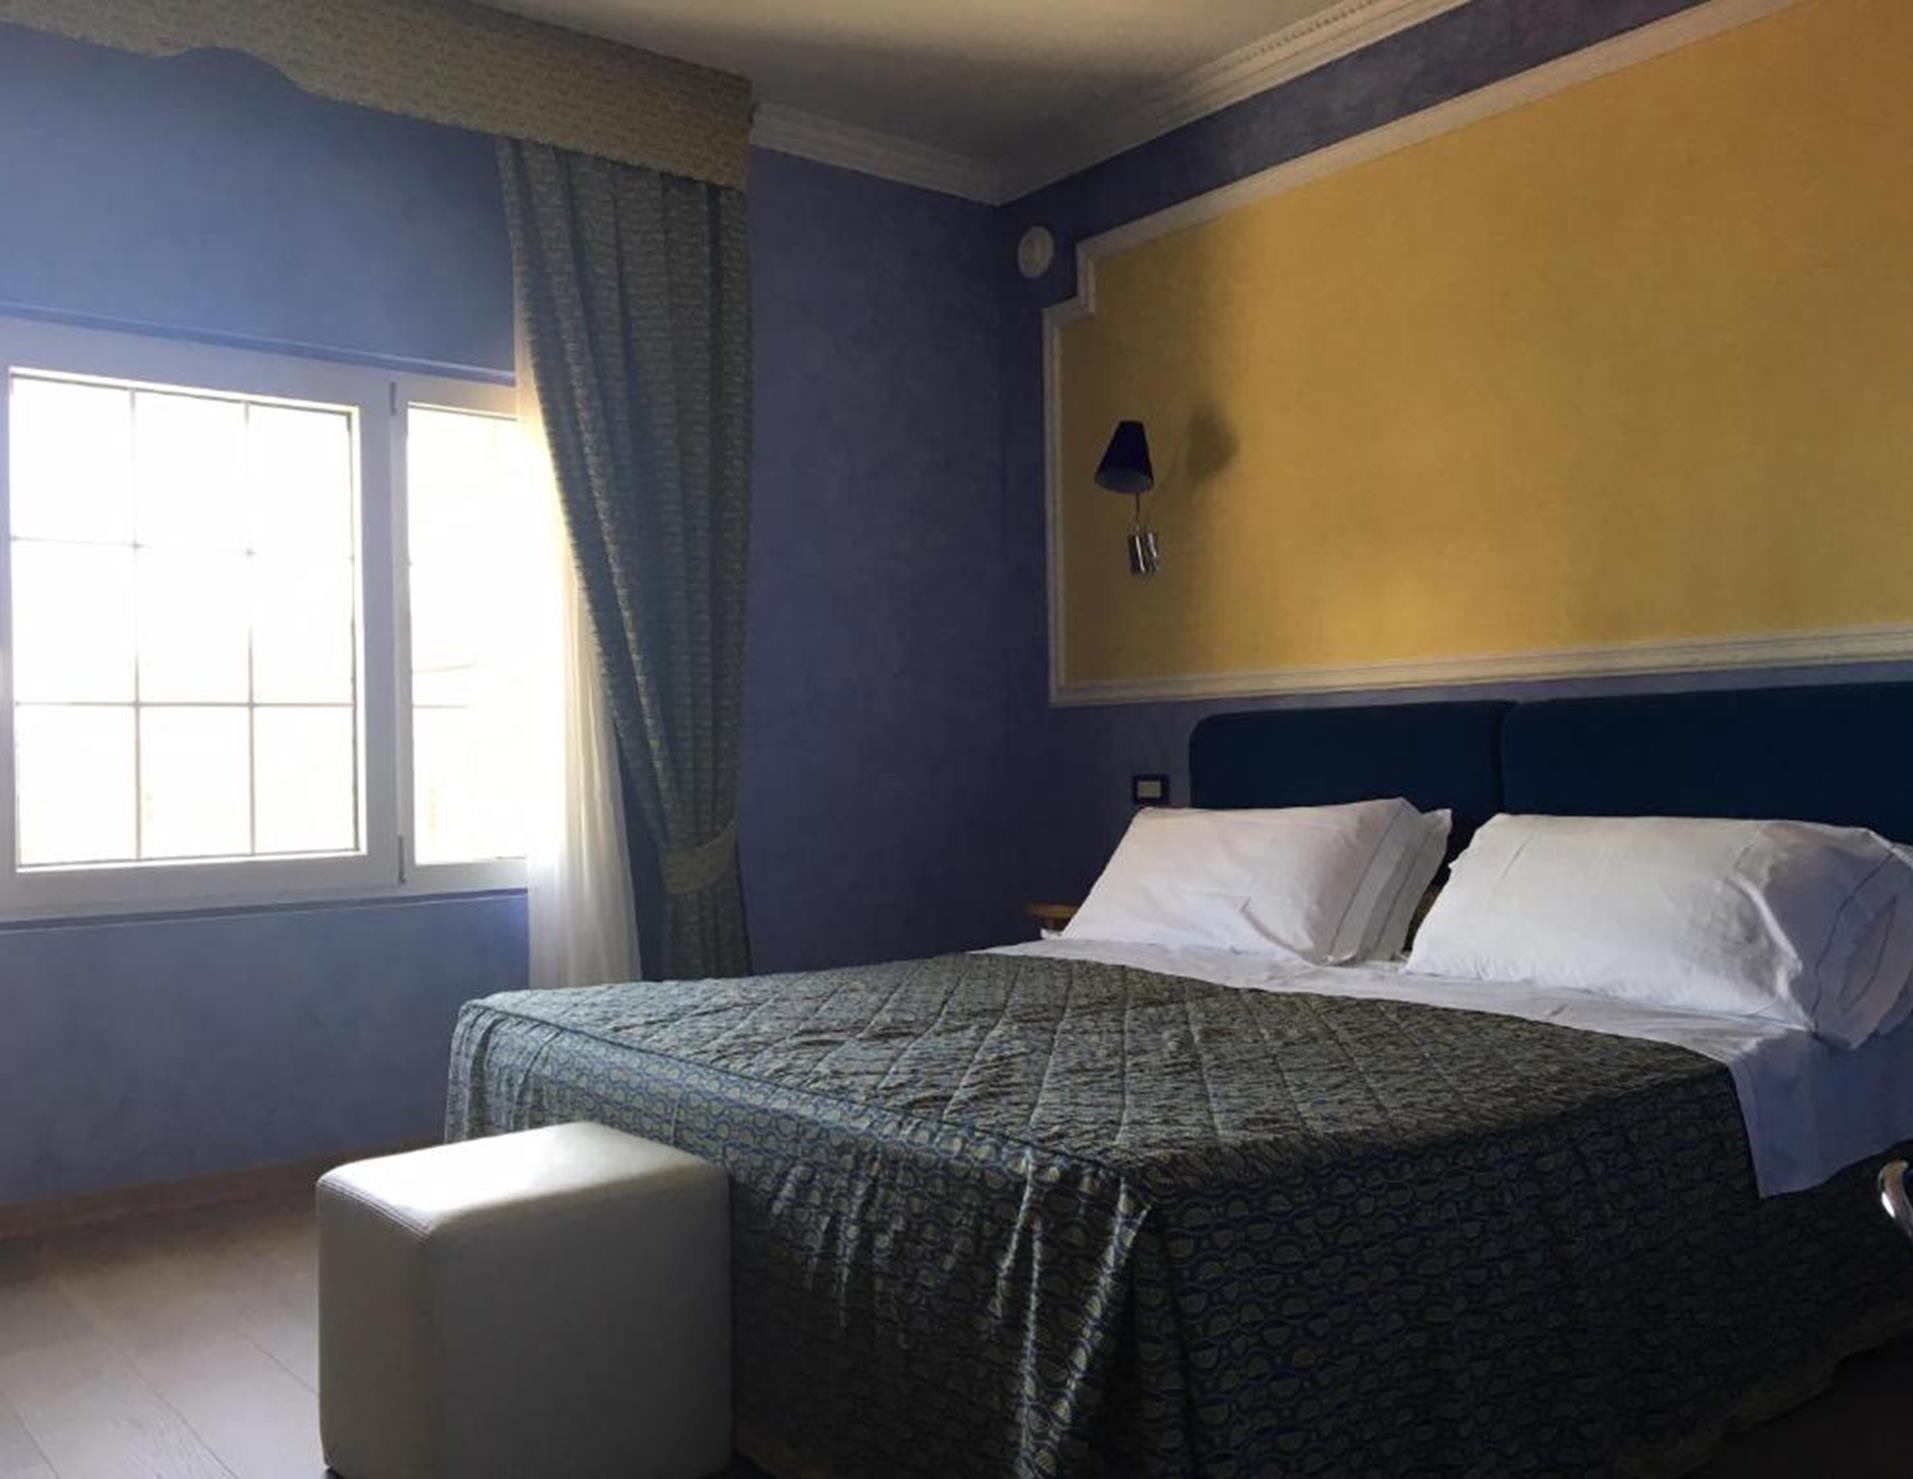 Grand Hotel Cesenatico - Room 5